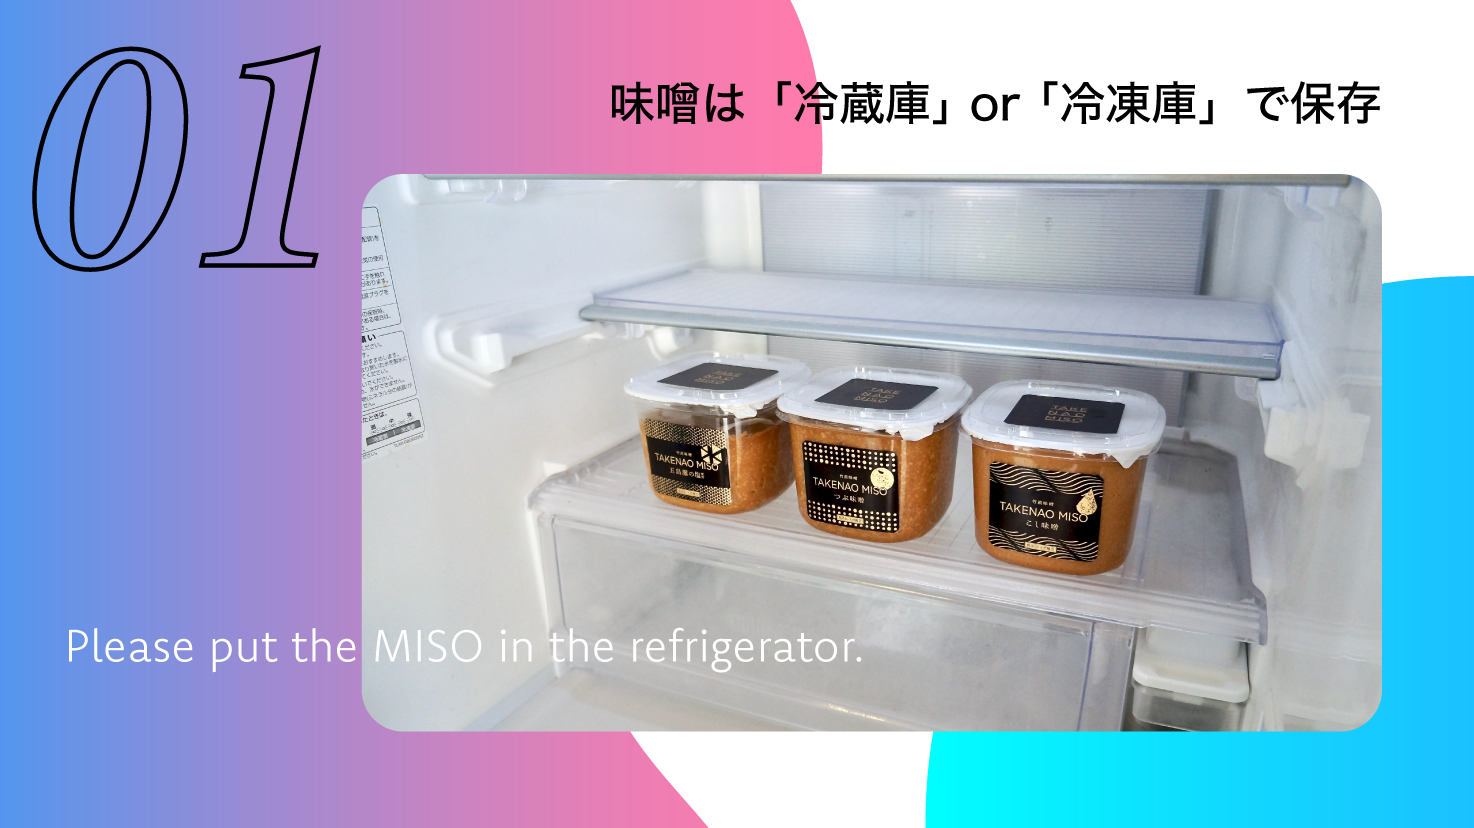 味噌が到着したら、すぐに「冷蔵庫」か「冷凍庫」にて保存してください。 ご家庭の冷凍庫であれば味噌は凍ることはありません。（ちょっとだけ固くなります）さらに長期間保存することができるのでオススメです。